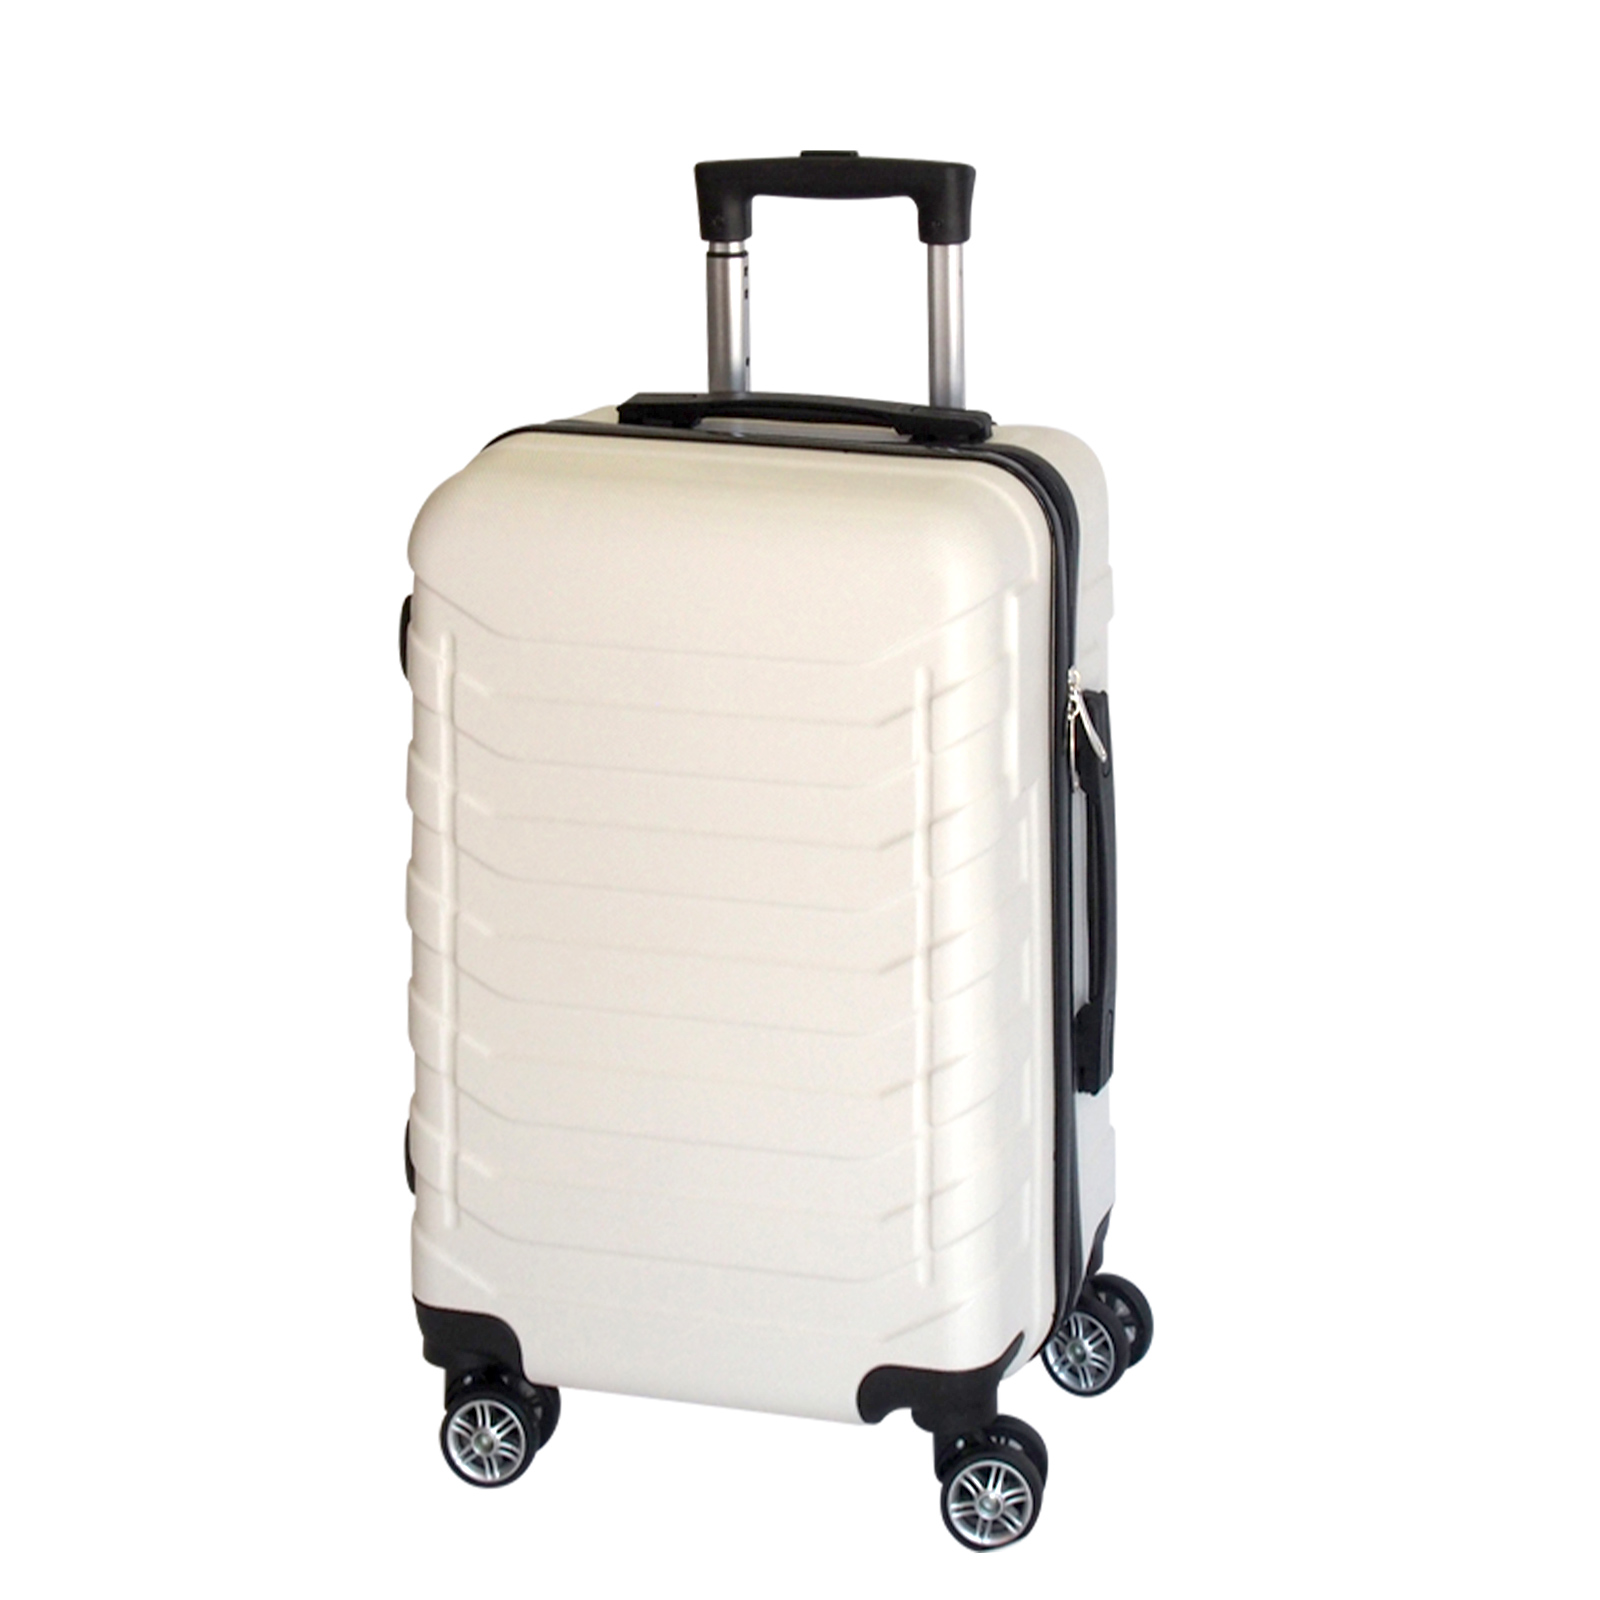 キャリーケース sサイズ スーツケース 機内持ち込み 容量29LSサイズ S キャリーバッグ 鍵なし ライト 軽量 重さ約2.6kg 静音  ダブルキャスター 8輪 suitcase